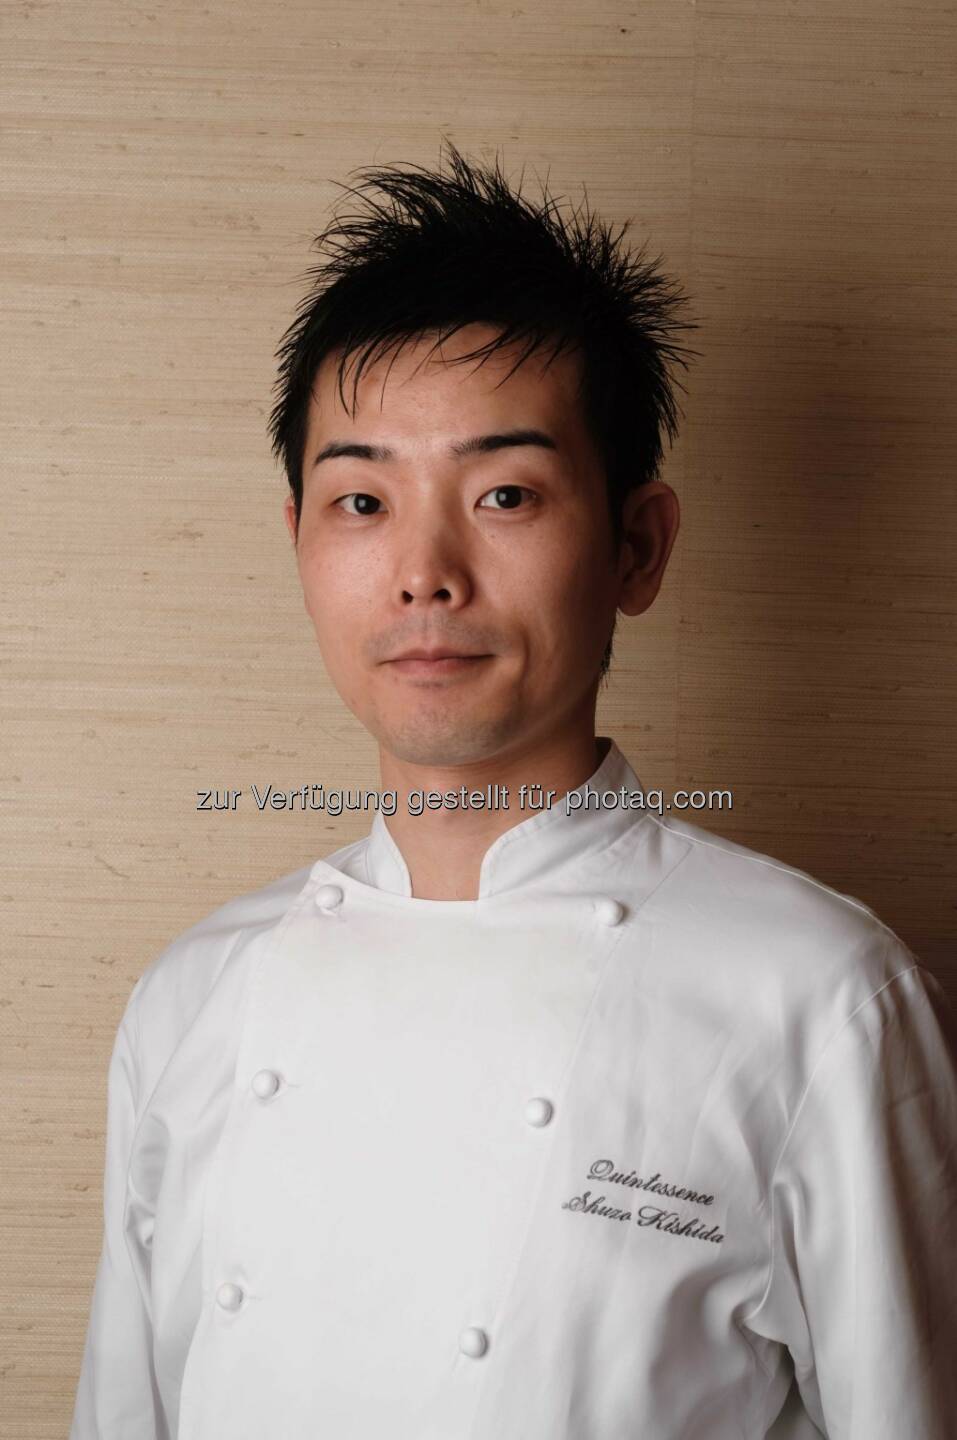 Der junge japanische Drei-Sterne-Koch Shuzo Kishida aus Tokio erhält den Eckart 2014 für Lebenskultur. Preisverleihung am 22.10. im BMW Museum.